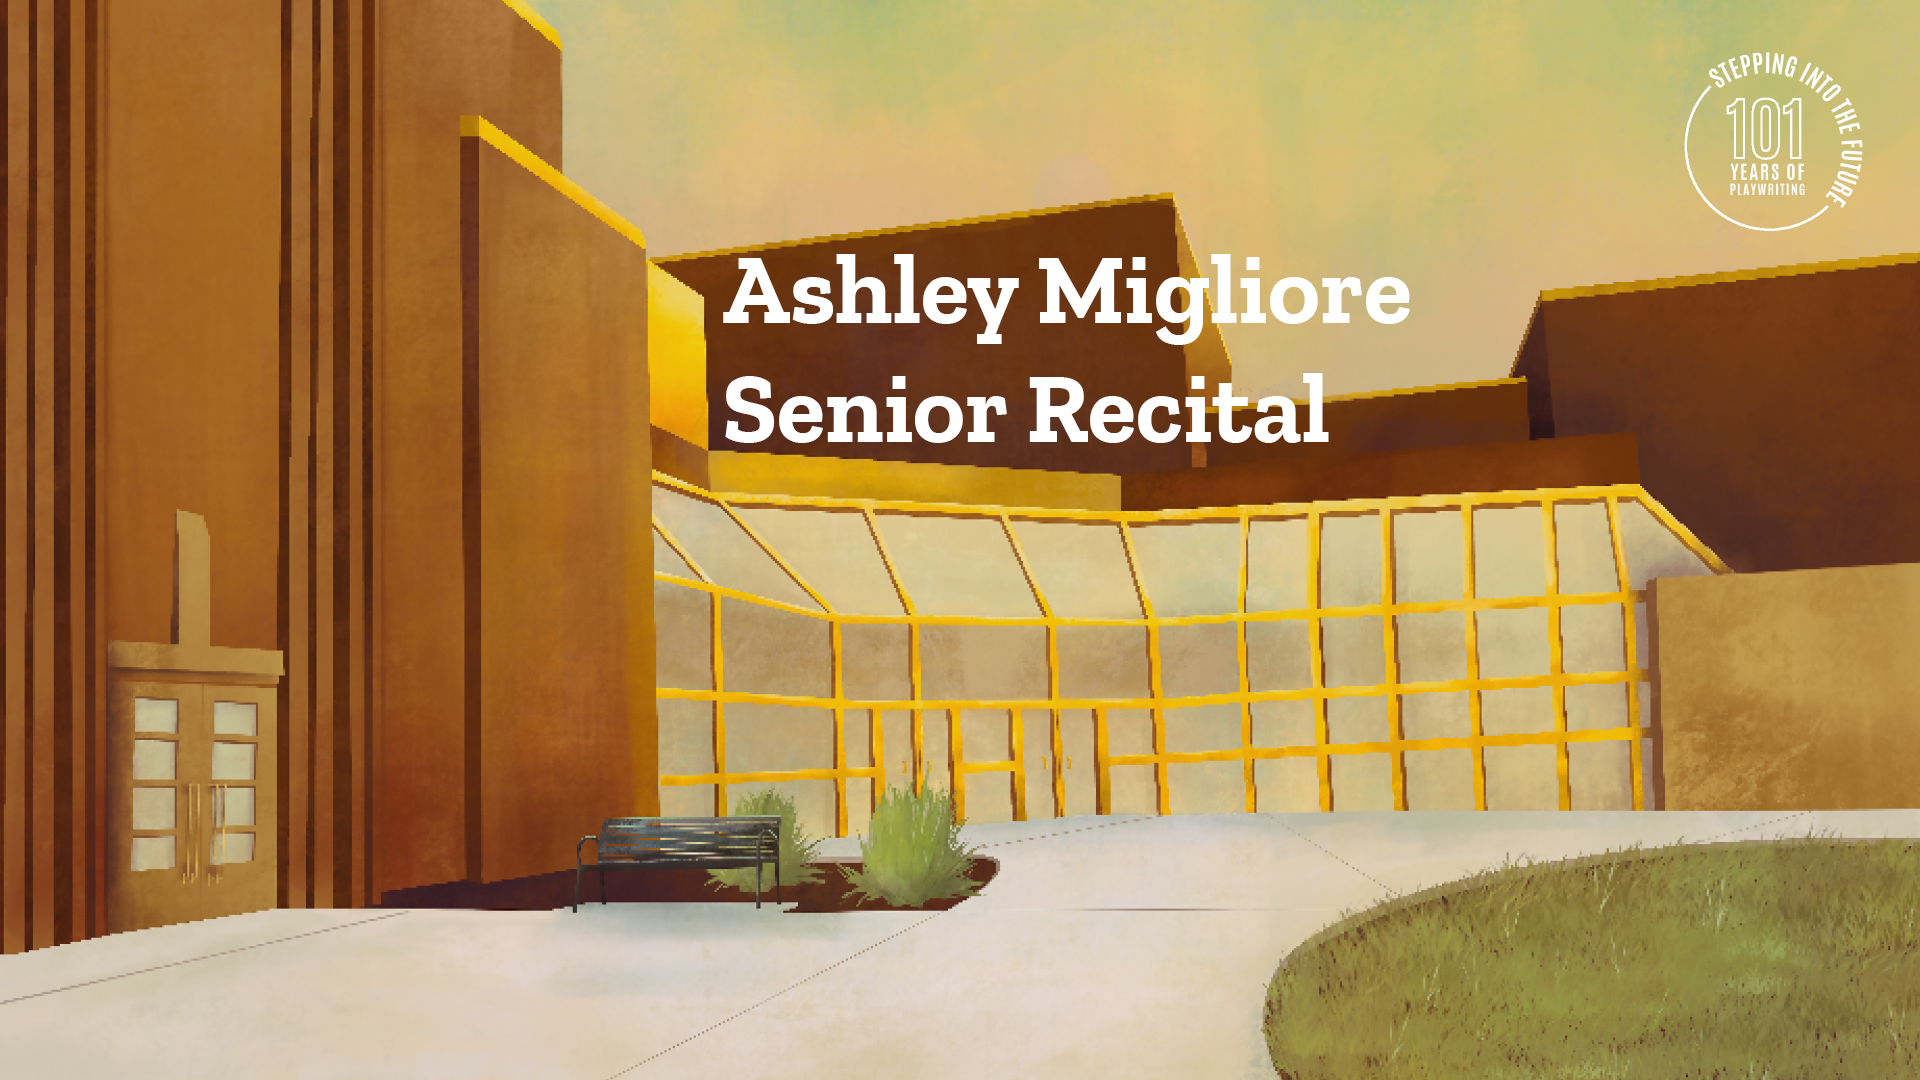 Ashley Migliore Senior Recital